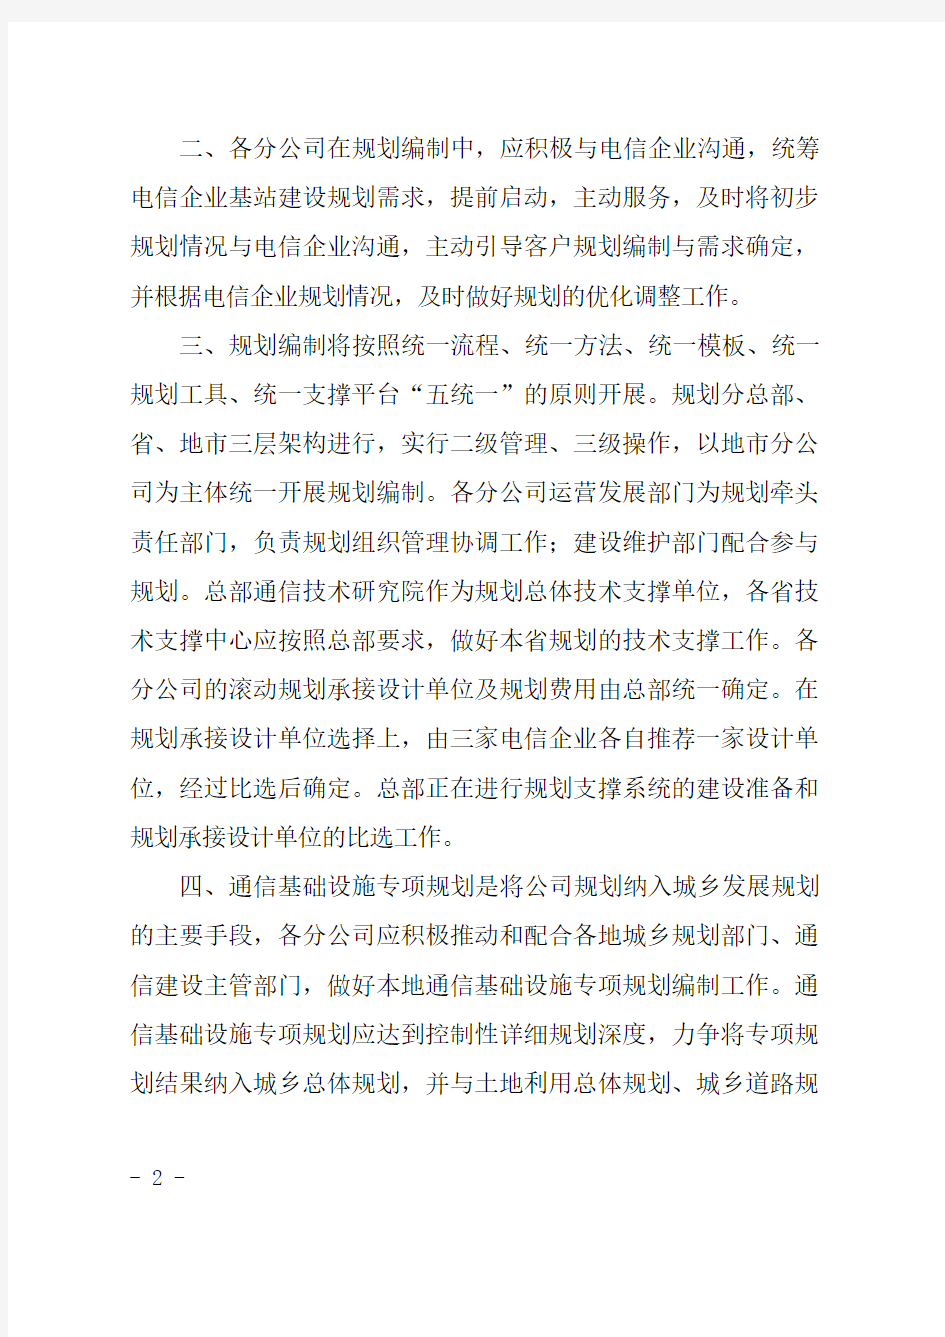 关于印发《中国铁塔股份有限公司规划指导意见》的通知正文